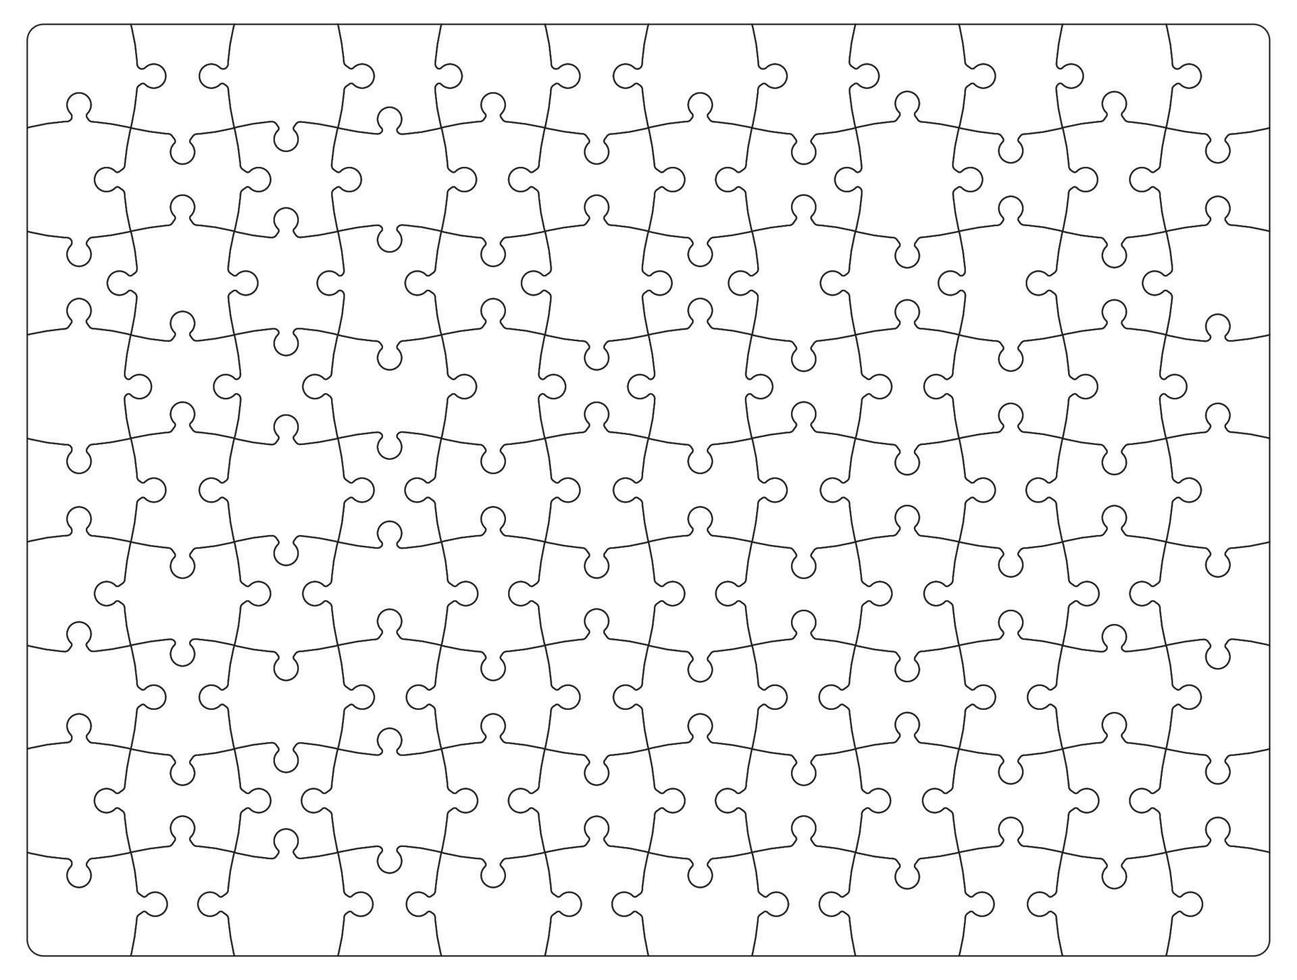 padrão de grade em branco de quebra-cabeça ou plano de fundo vetor